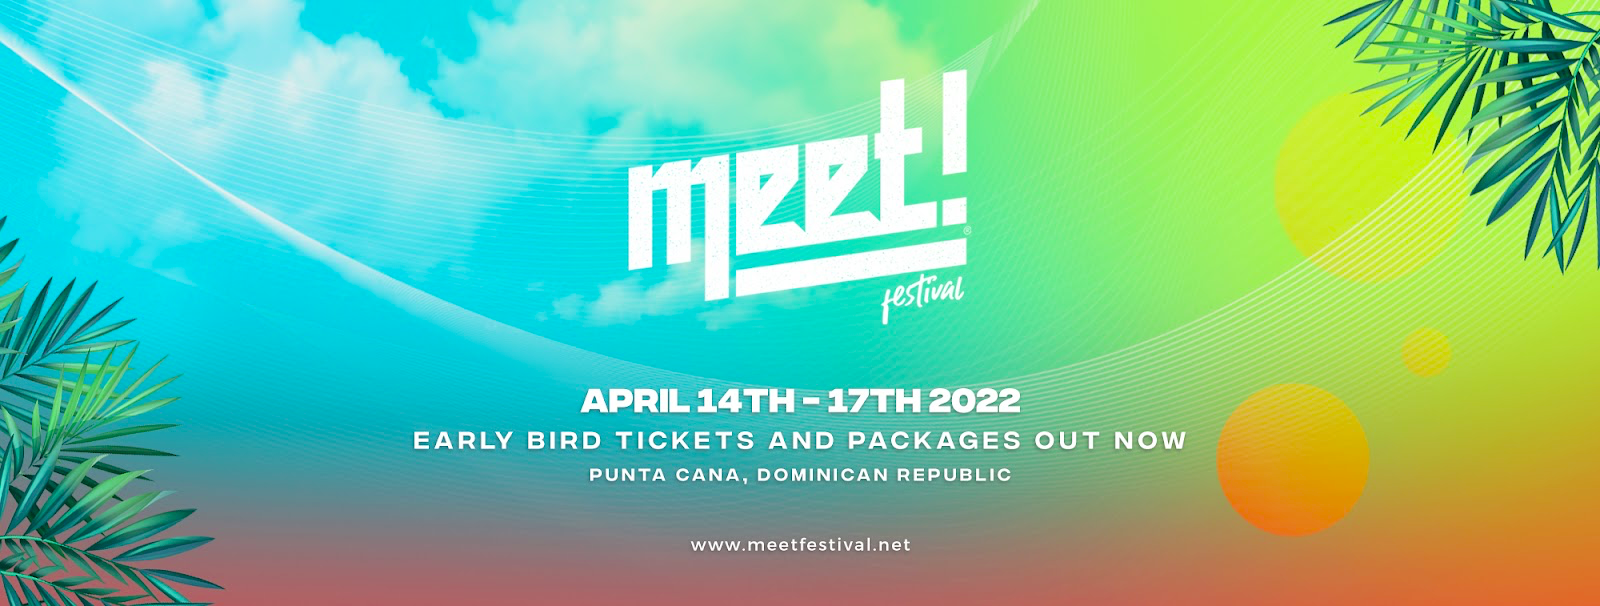 Meet! Festival anuncia line up completo com Steve Bug, Magda, Sante e muito mais!